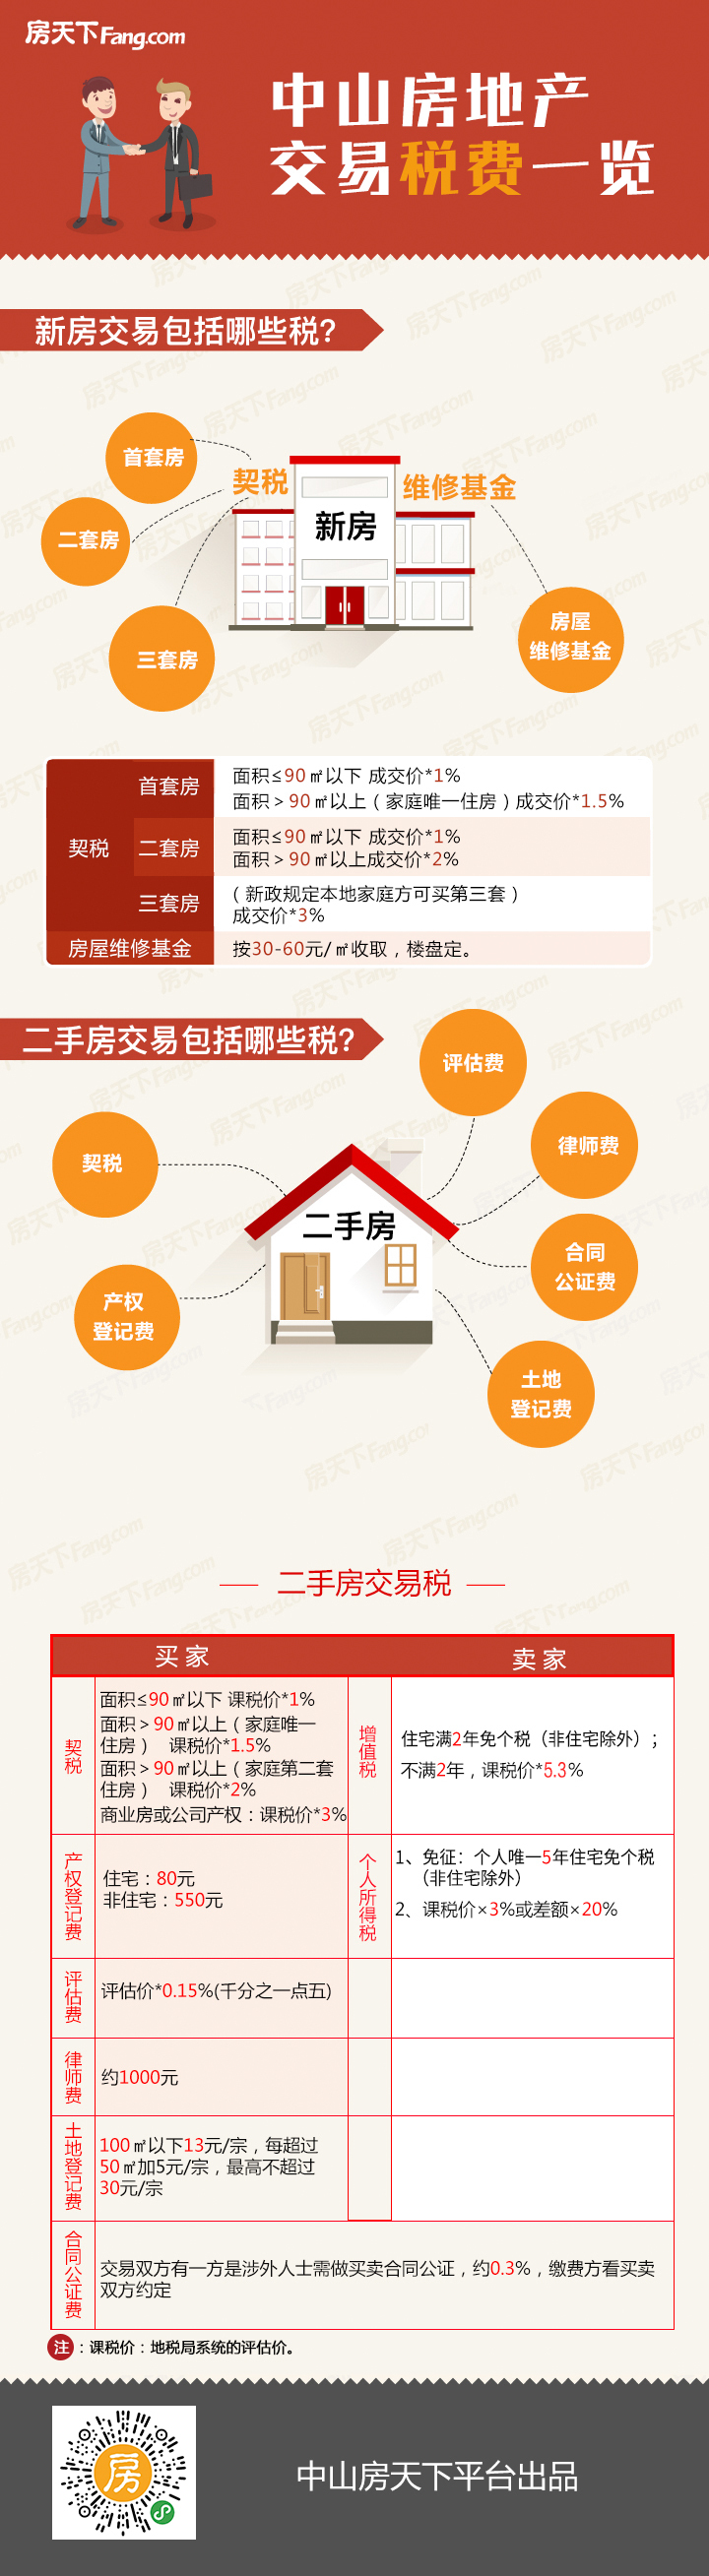 广州将挑选70个小区进行成片连片加装电梯